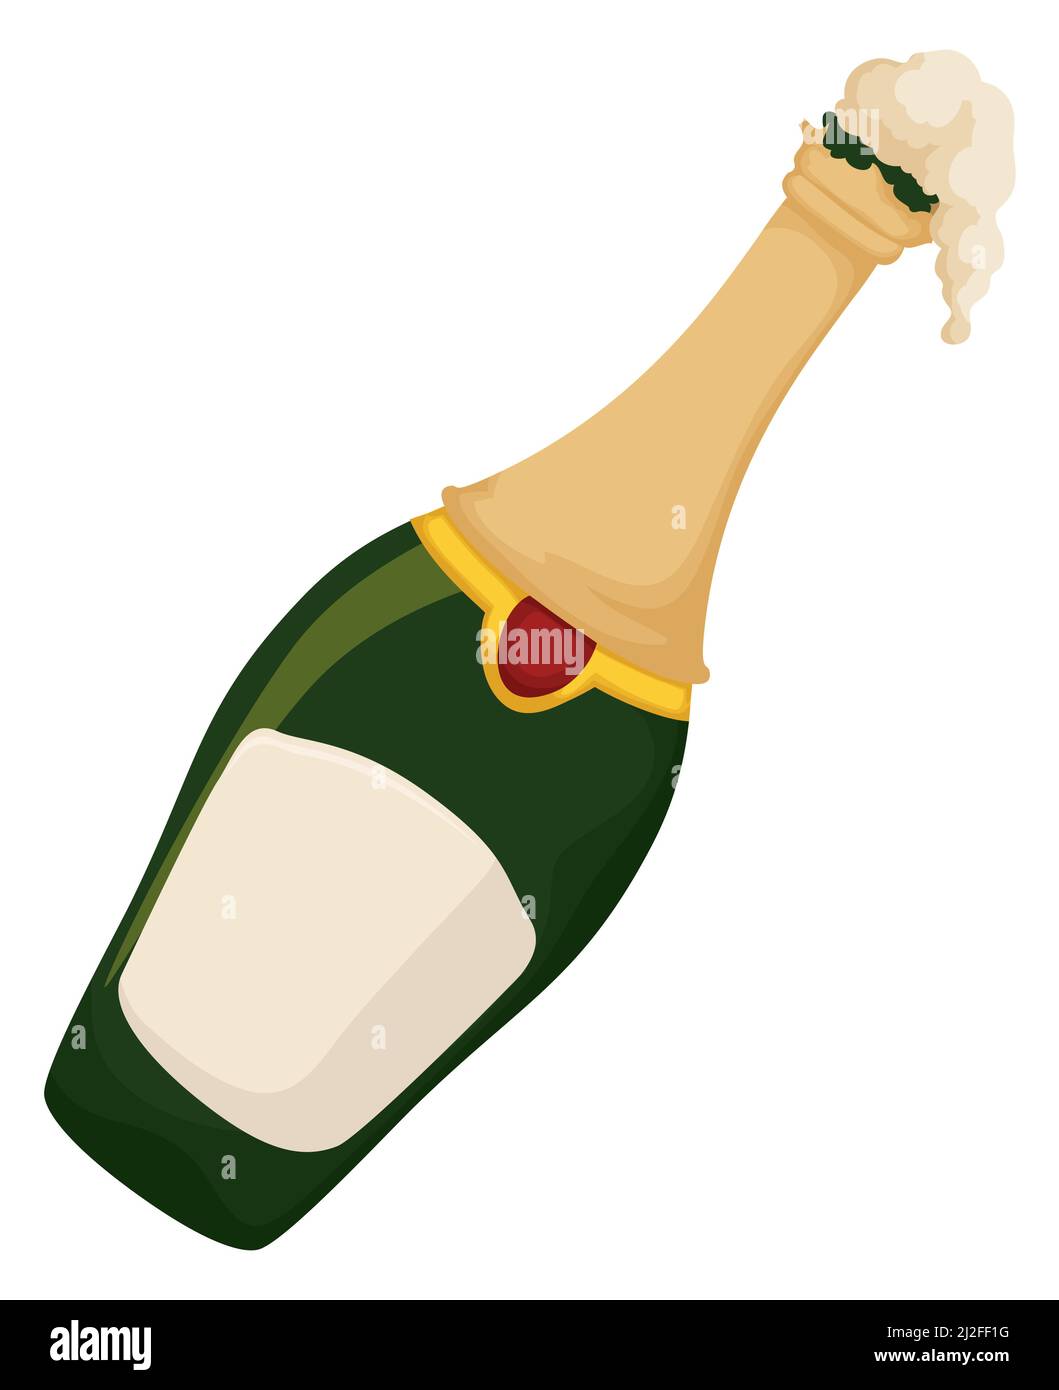 Köstliche schaumige und gelehnte Champagner-Flasche im Cartoon-Stil, bereit, bei besonderen Veranstaltungen begeistert zu werden. Stock Vektor